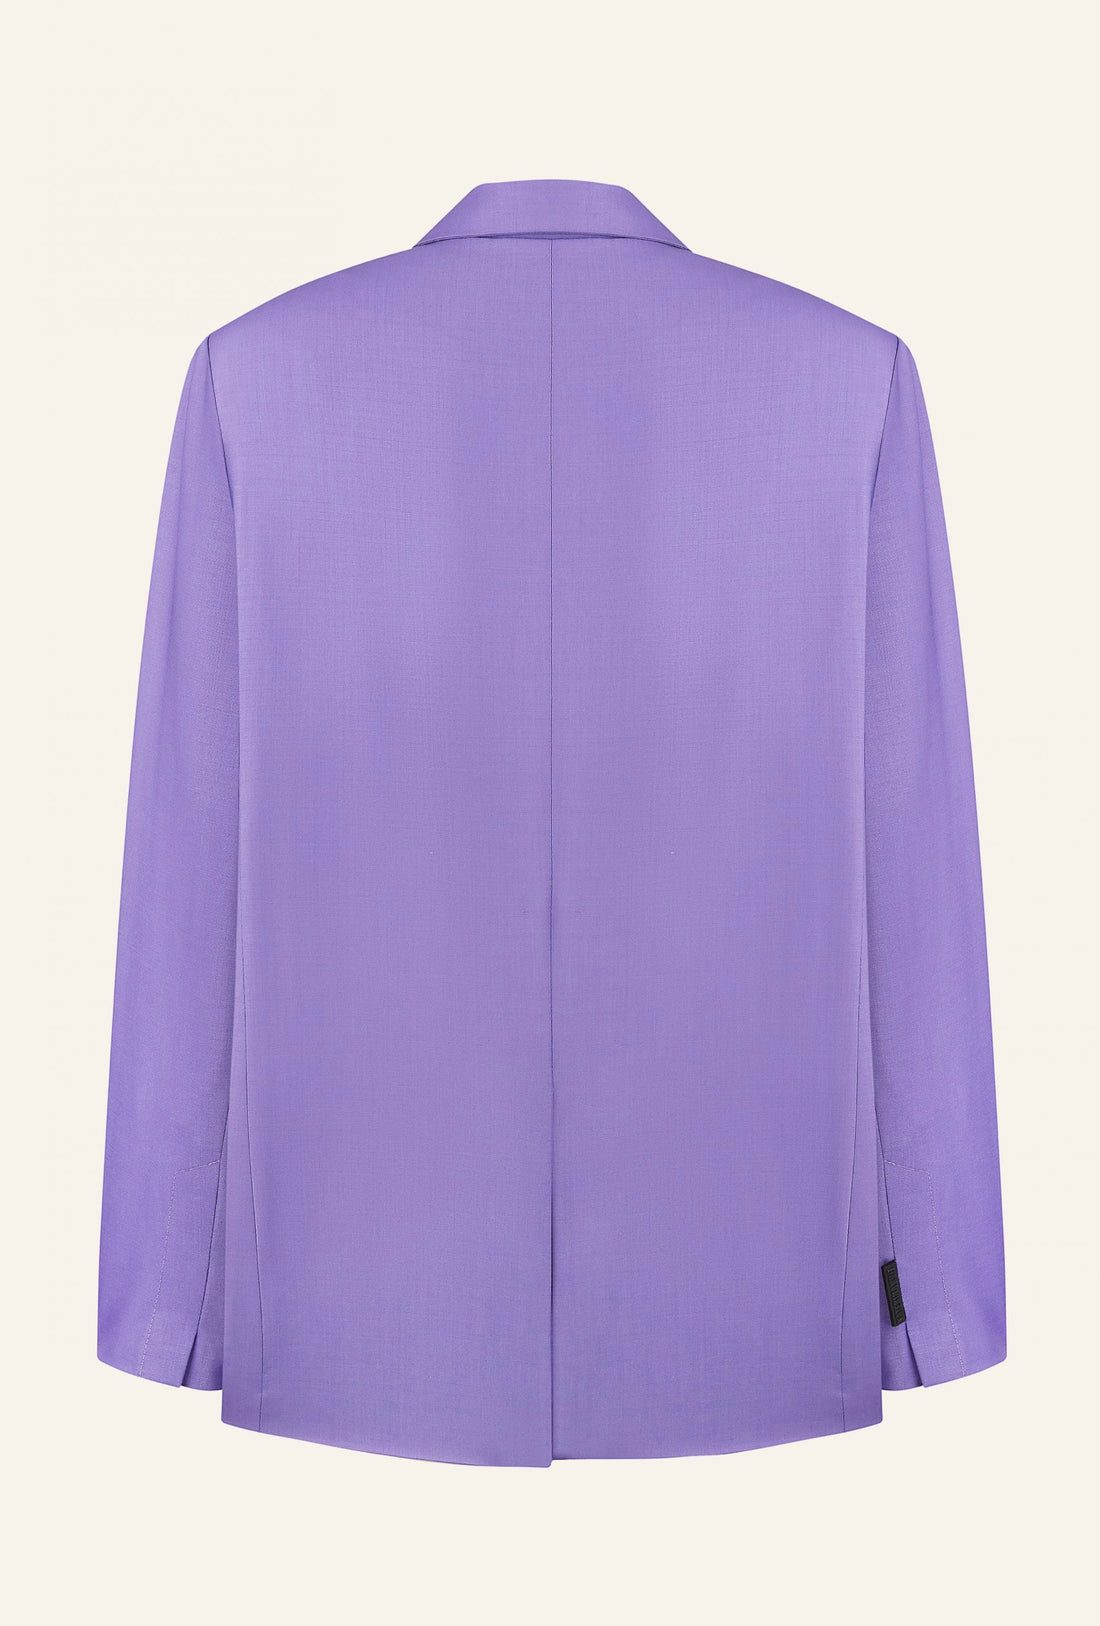 Purple wool jacket (K.KVIT, T.MOSCA) JAW232401